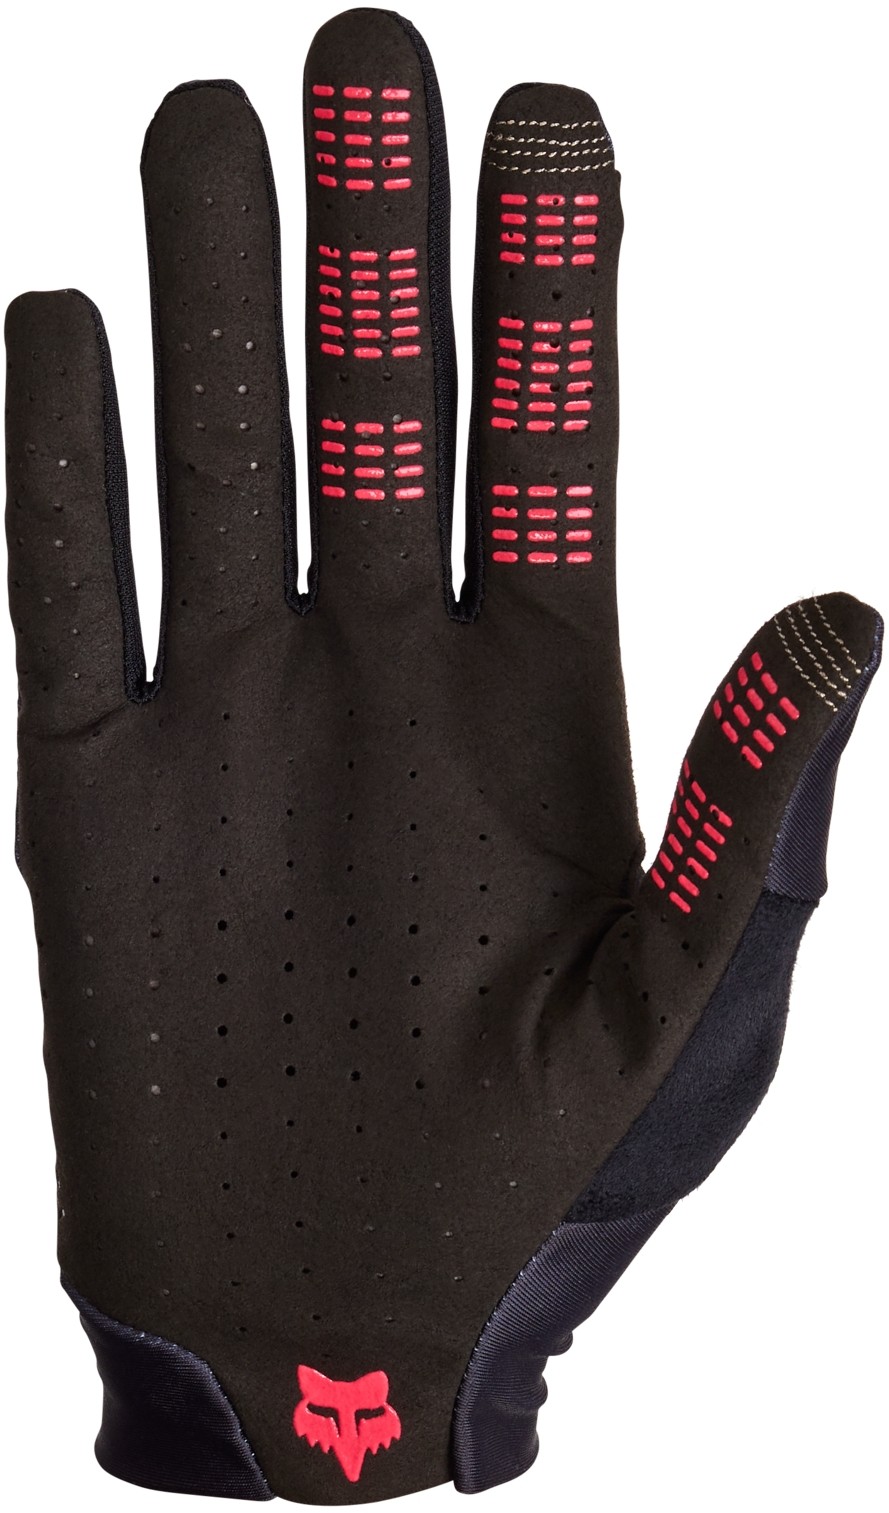 Flexair Long Finger MTB Gloves Taunt image 1